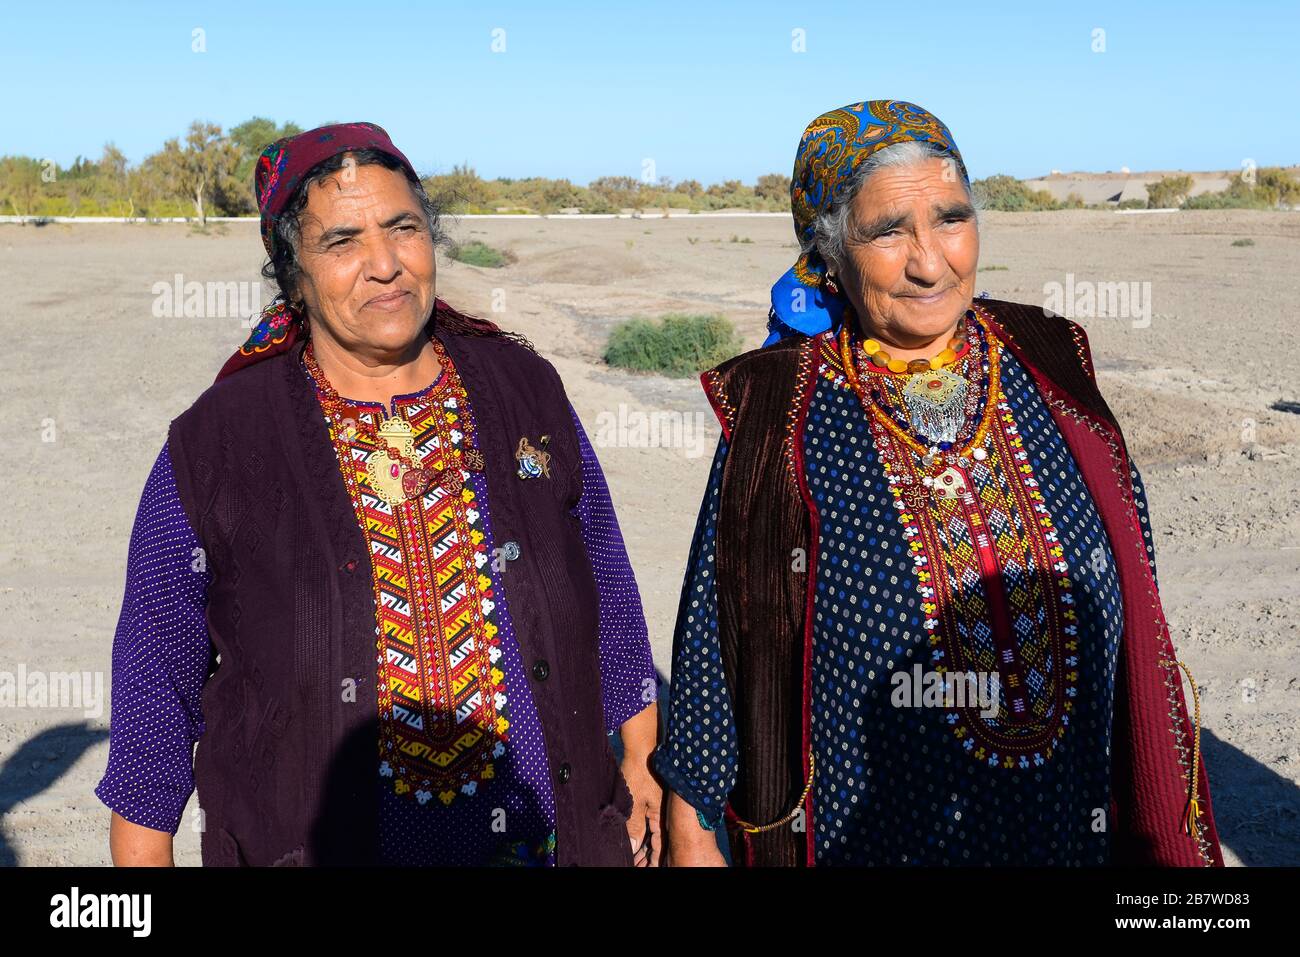 Dos posando vieja mujer con ropa tradicional para el área rural en Asia Central en Kunya Urgench, Turkmenistán. Traje turcomano de colores y bufanda. Foto de stock